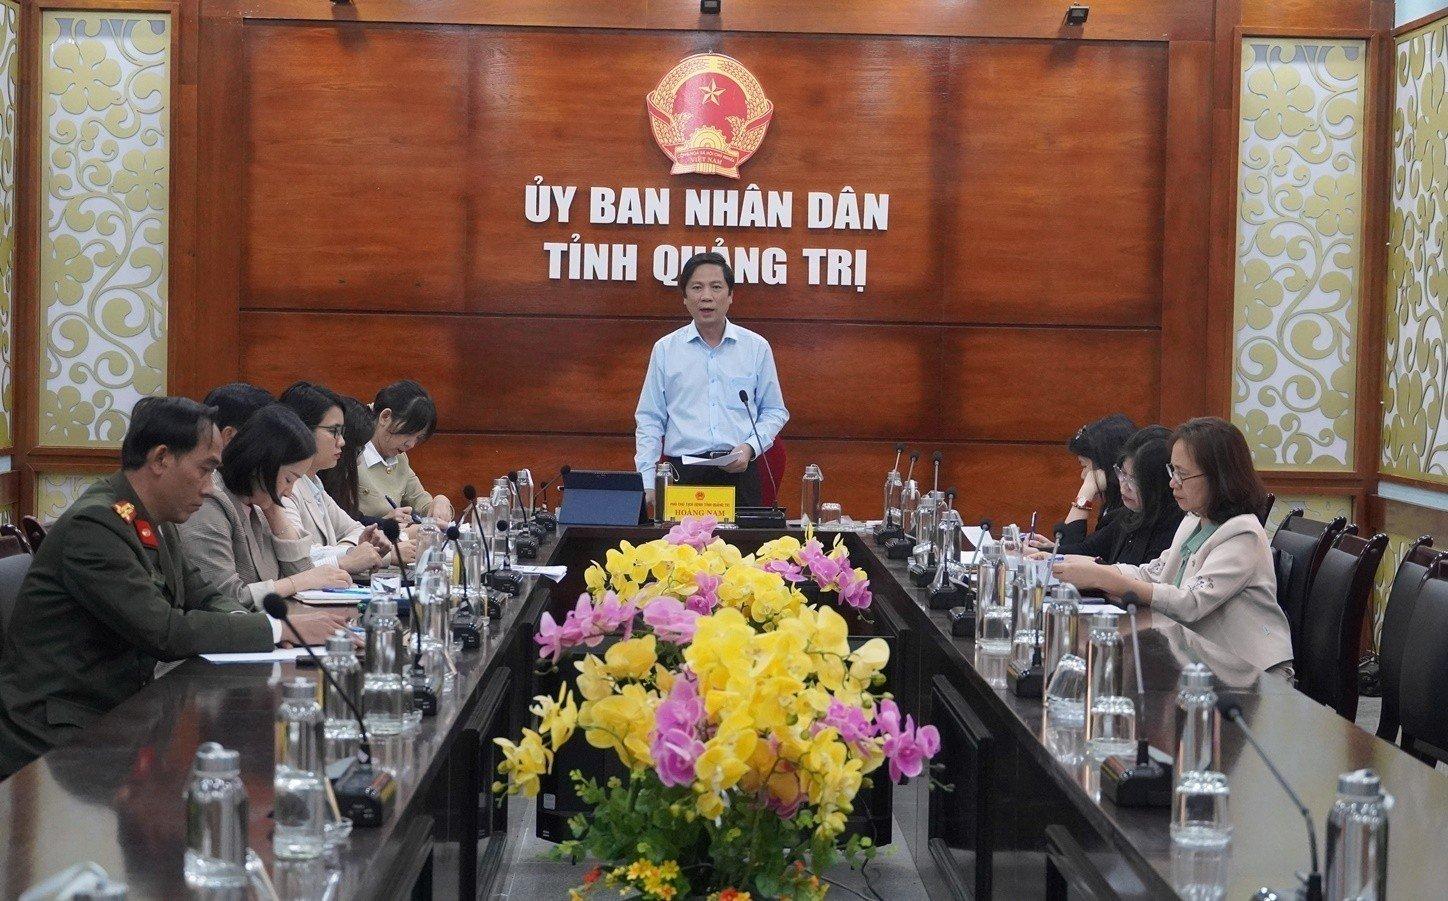 Tỉnh Quảng Trị tham dự Hội nghị trực tuyến giao ban toàn quốc công tác phi chính phủ nước ngoài...